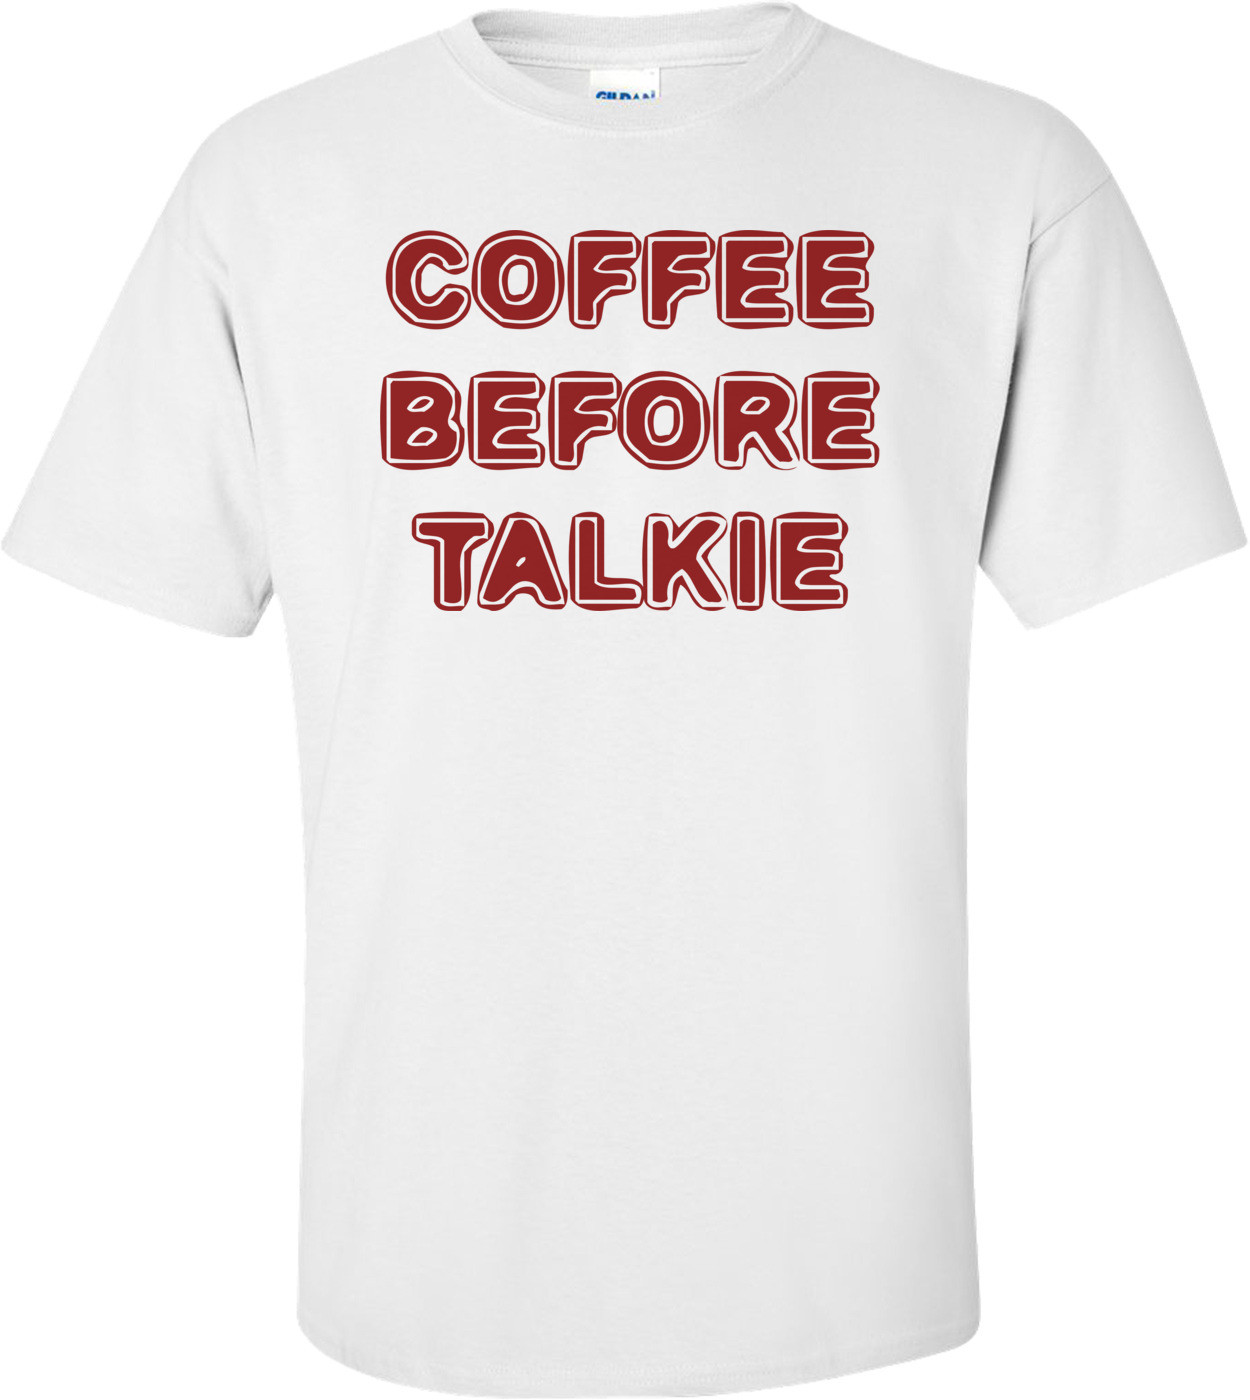 COFFEE BEFORE TALKIE